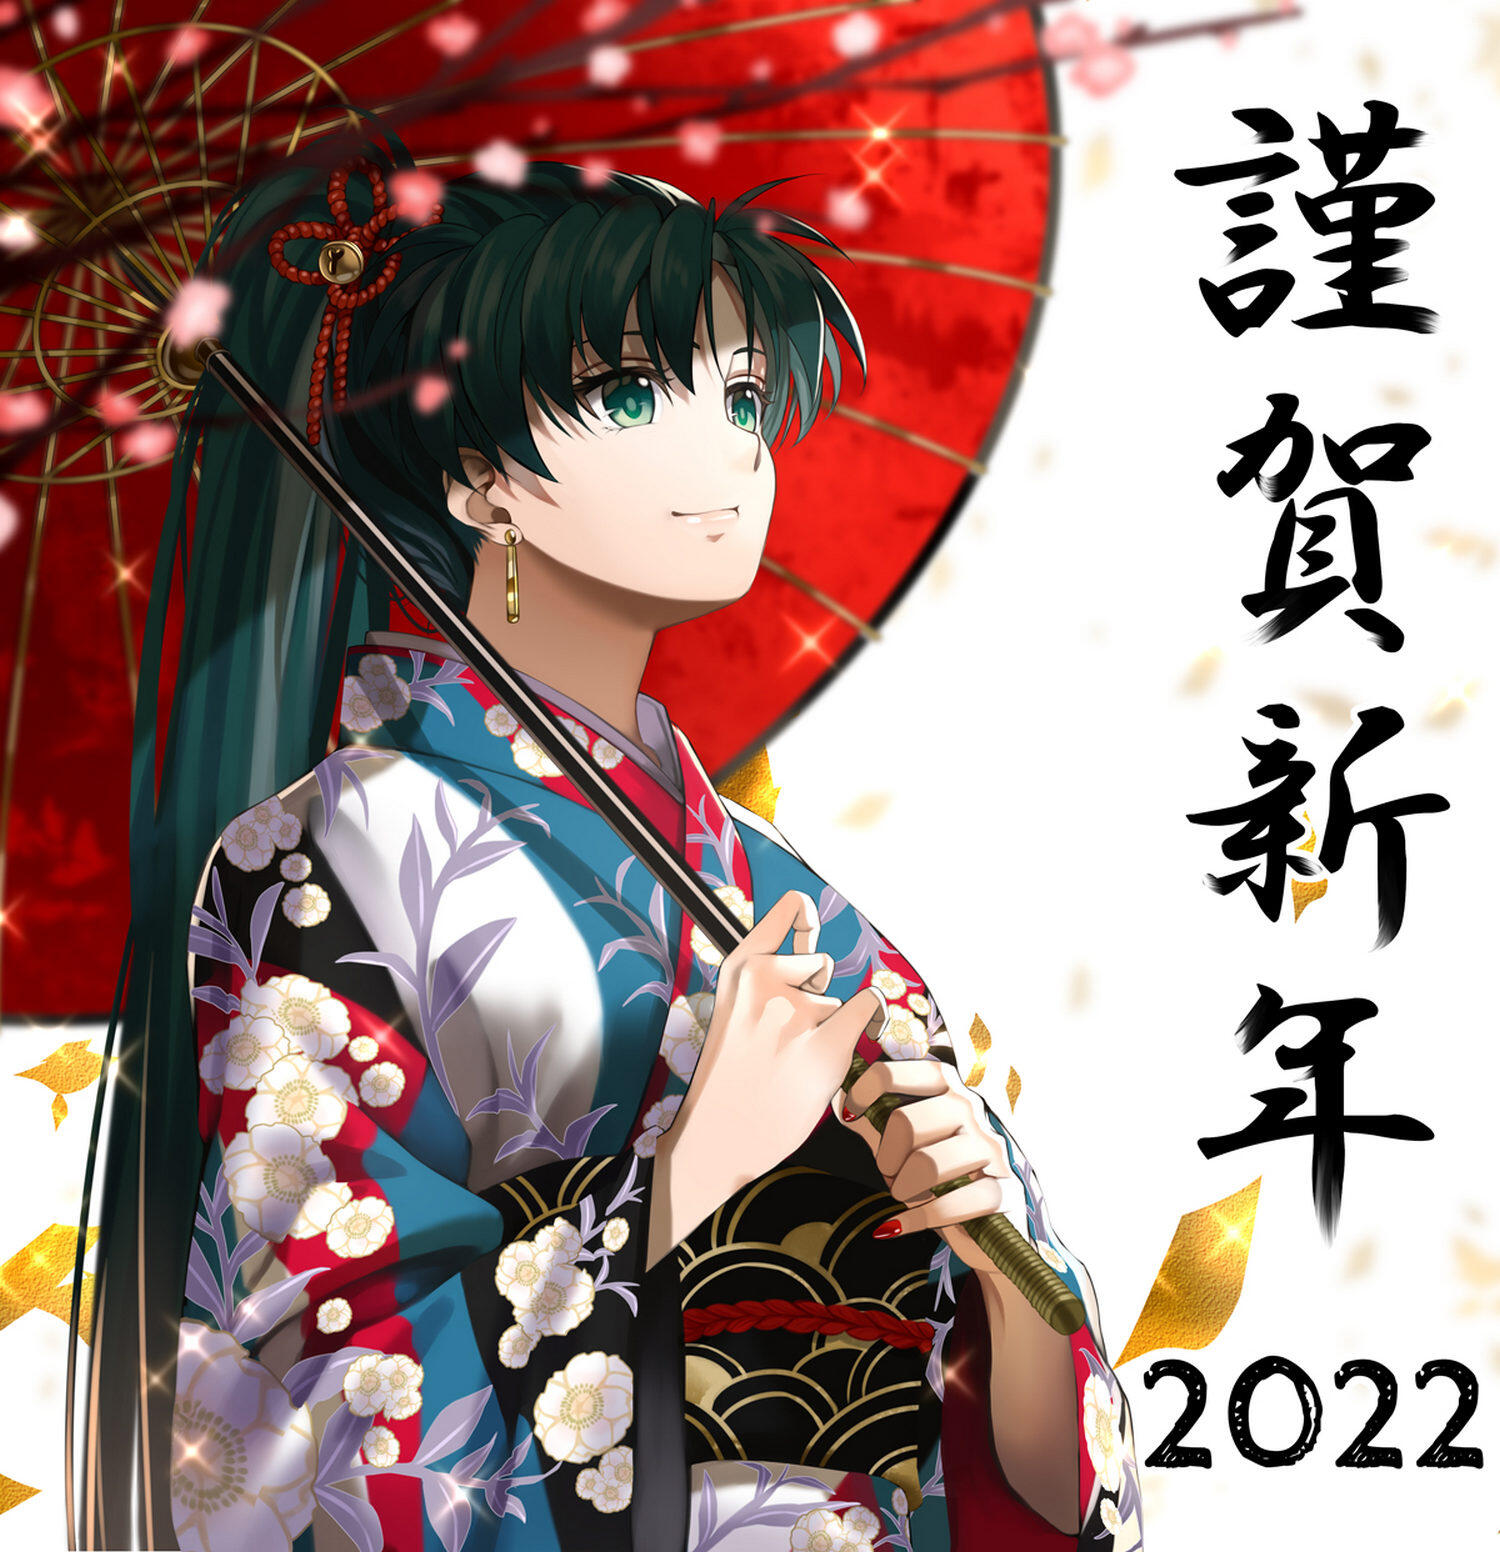 【新年图集】2022 虎年图集 第6弹